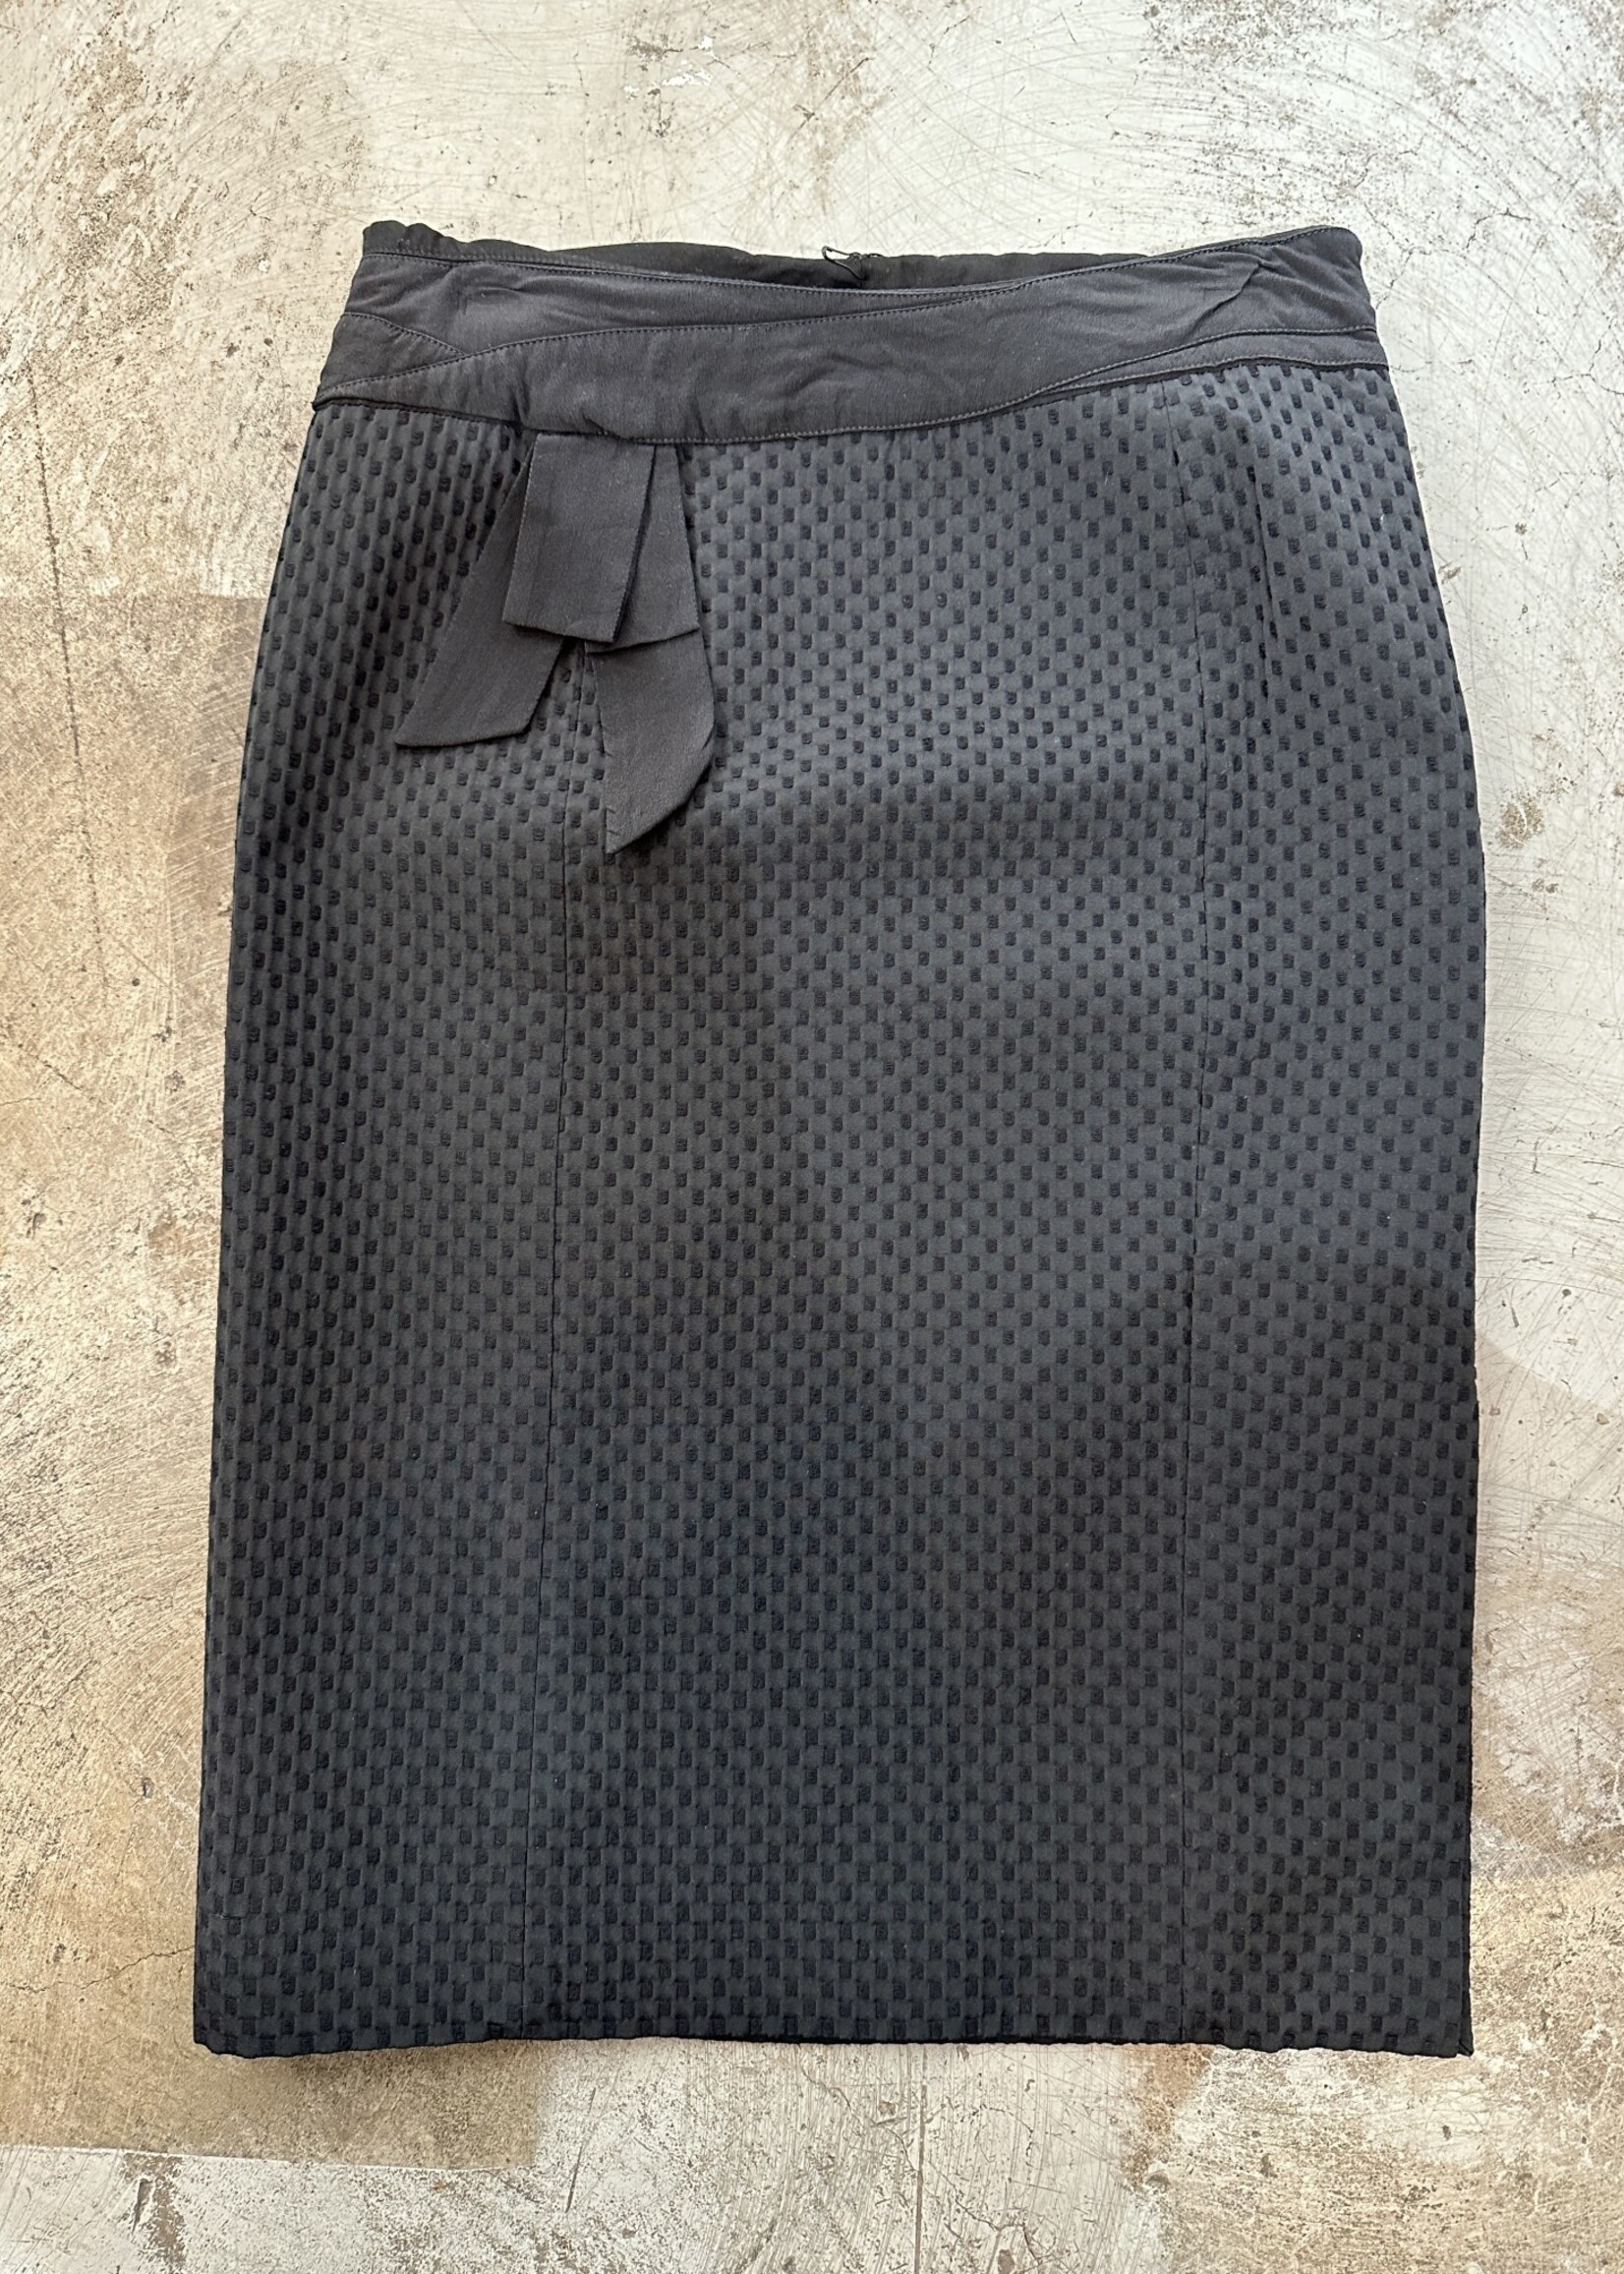 Moschino Textured Black Skirt 28"